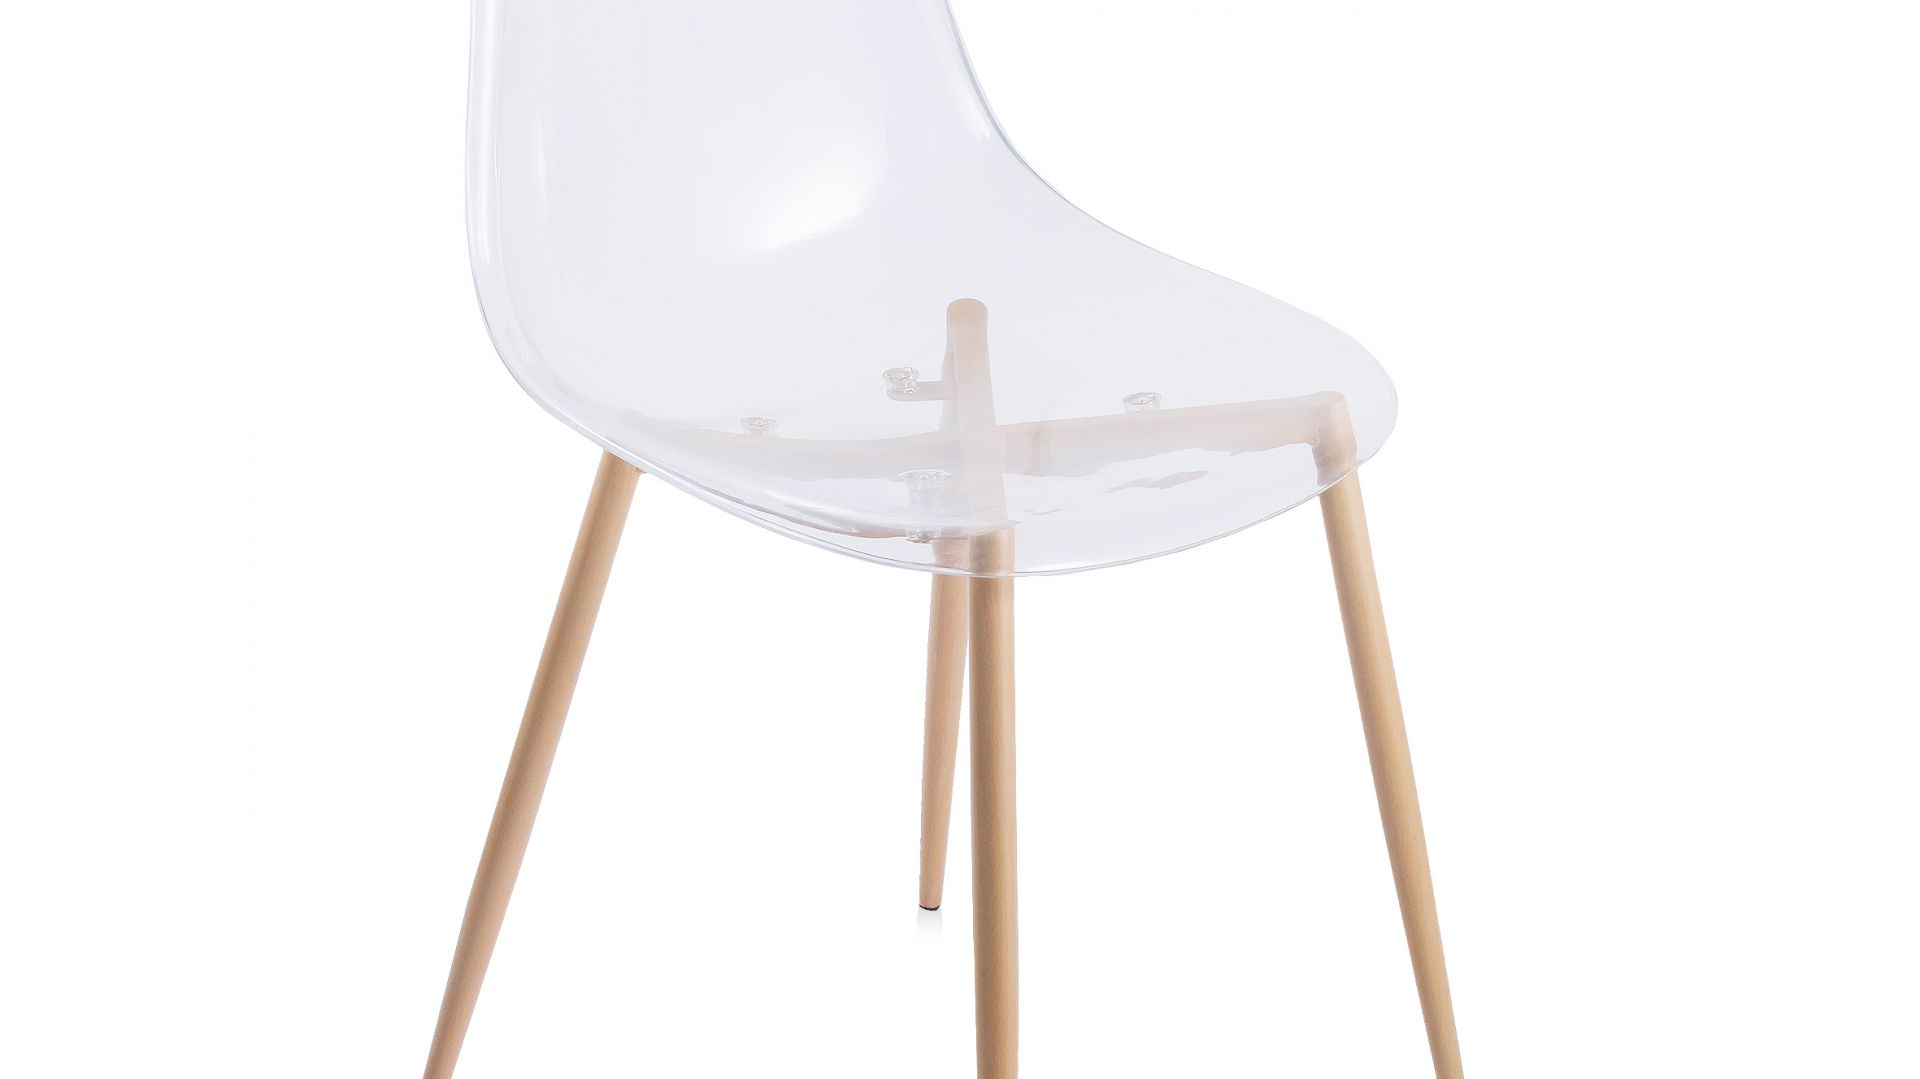 "Traspar" - transparentne krzesło